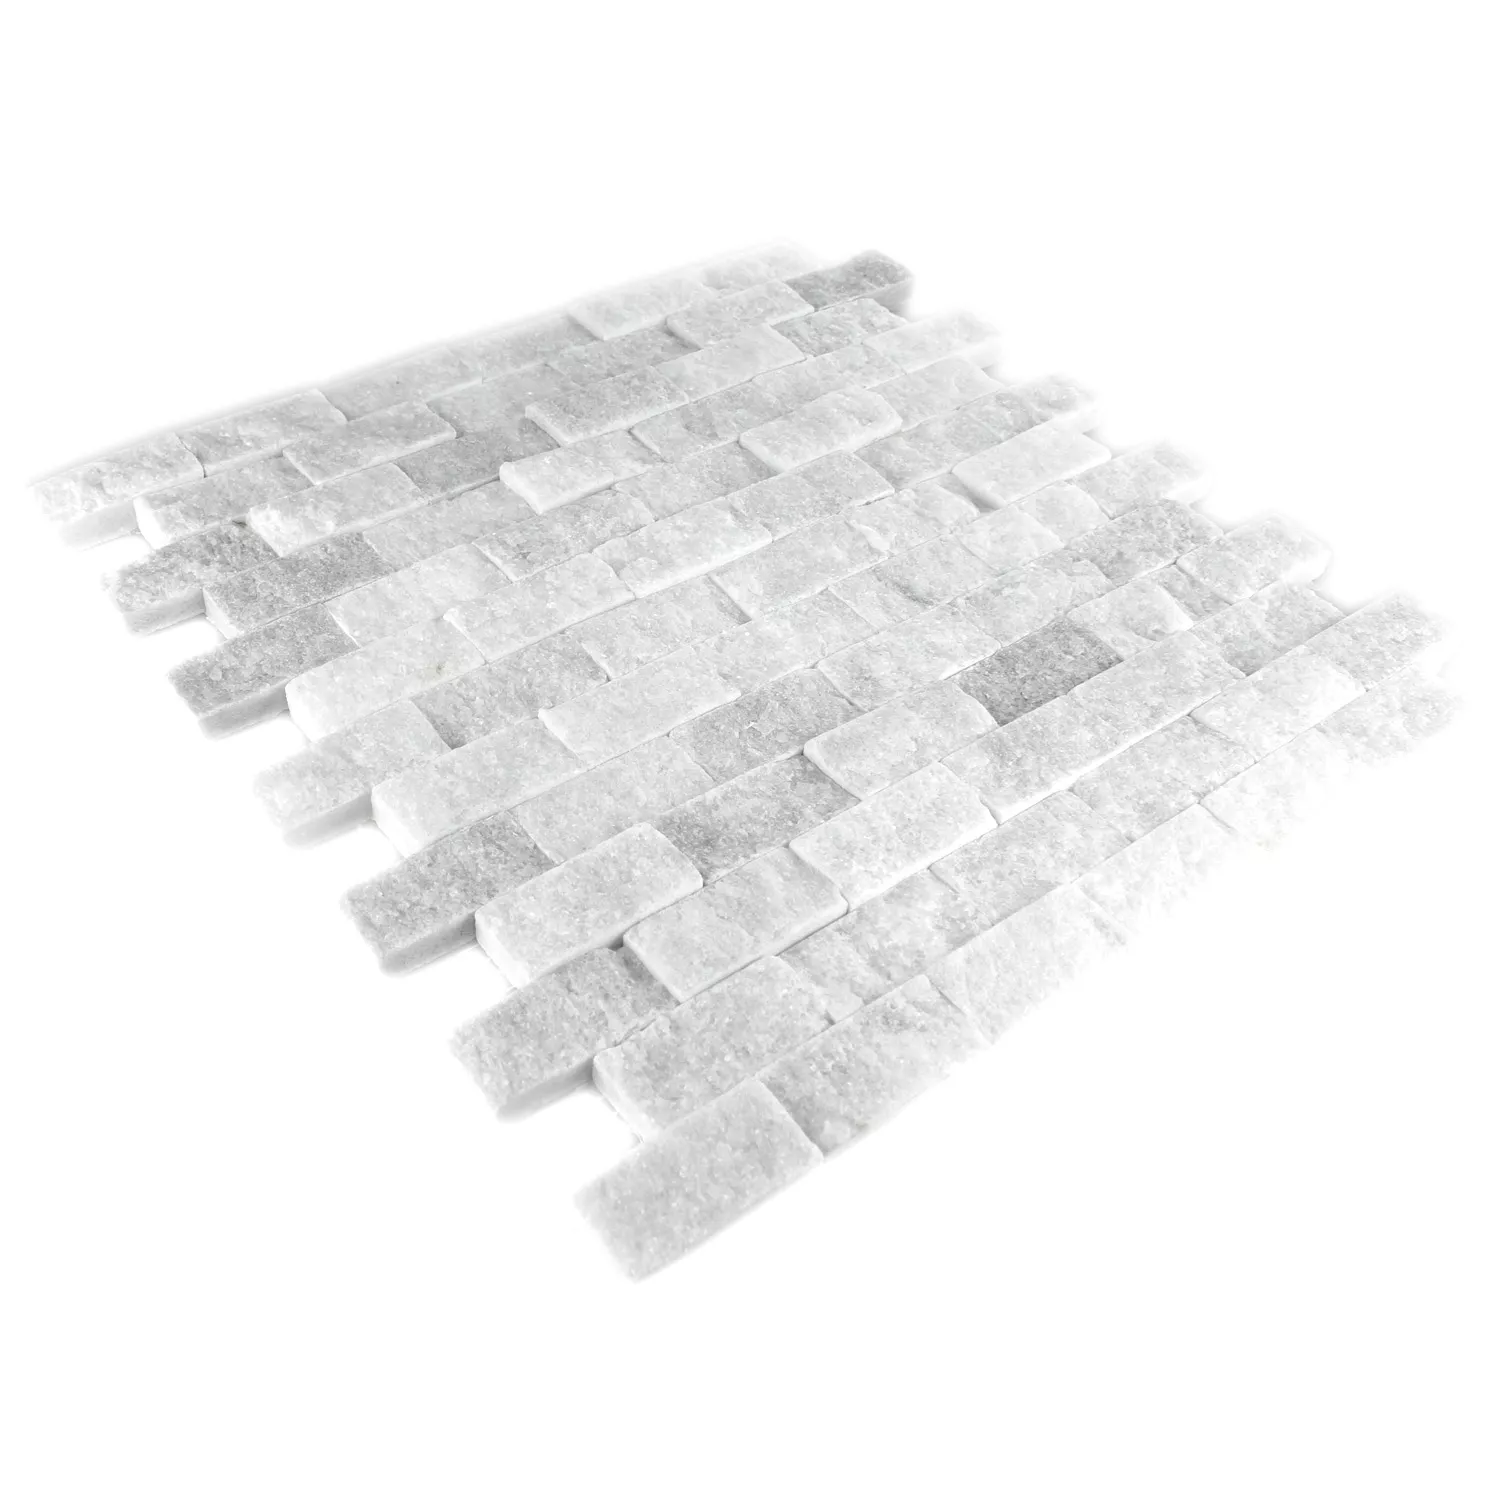 Mozaik Csempe Természetes Kő Üveggolyó Treviso Brick Fehér 3D